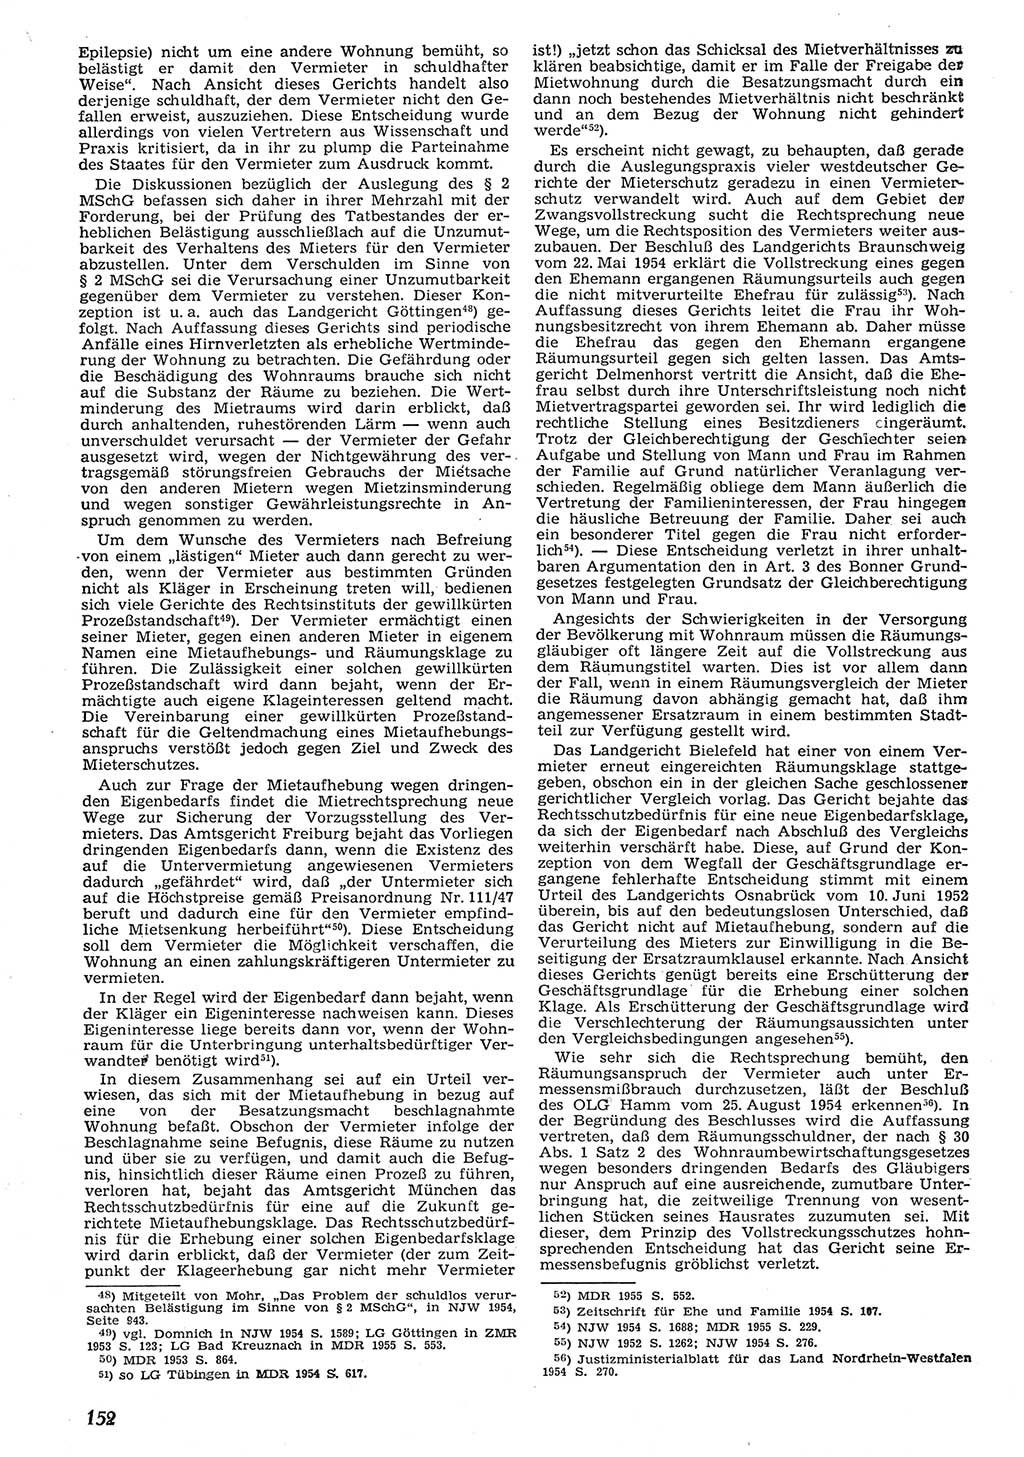 Neue Justiz (NJ), Zeitschrift für Recht und Rechtswissenschaft [Deutsche Demokratische Republik (DDR)], 10. Jahrgang 1956, Seite 152 (NJ DDR 1956, S. 152)